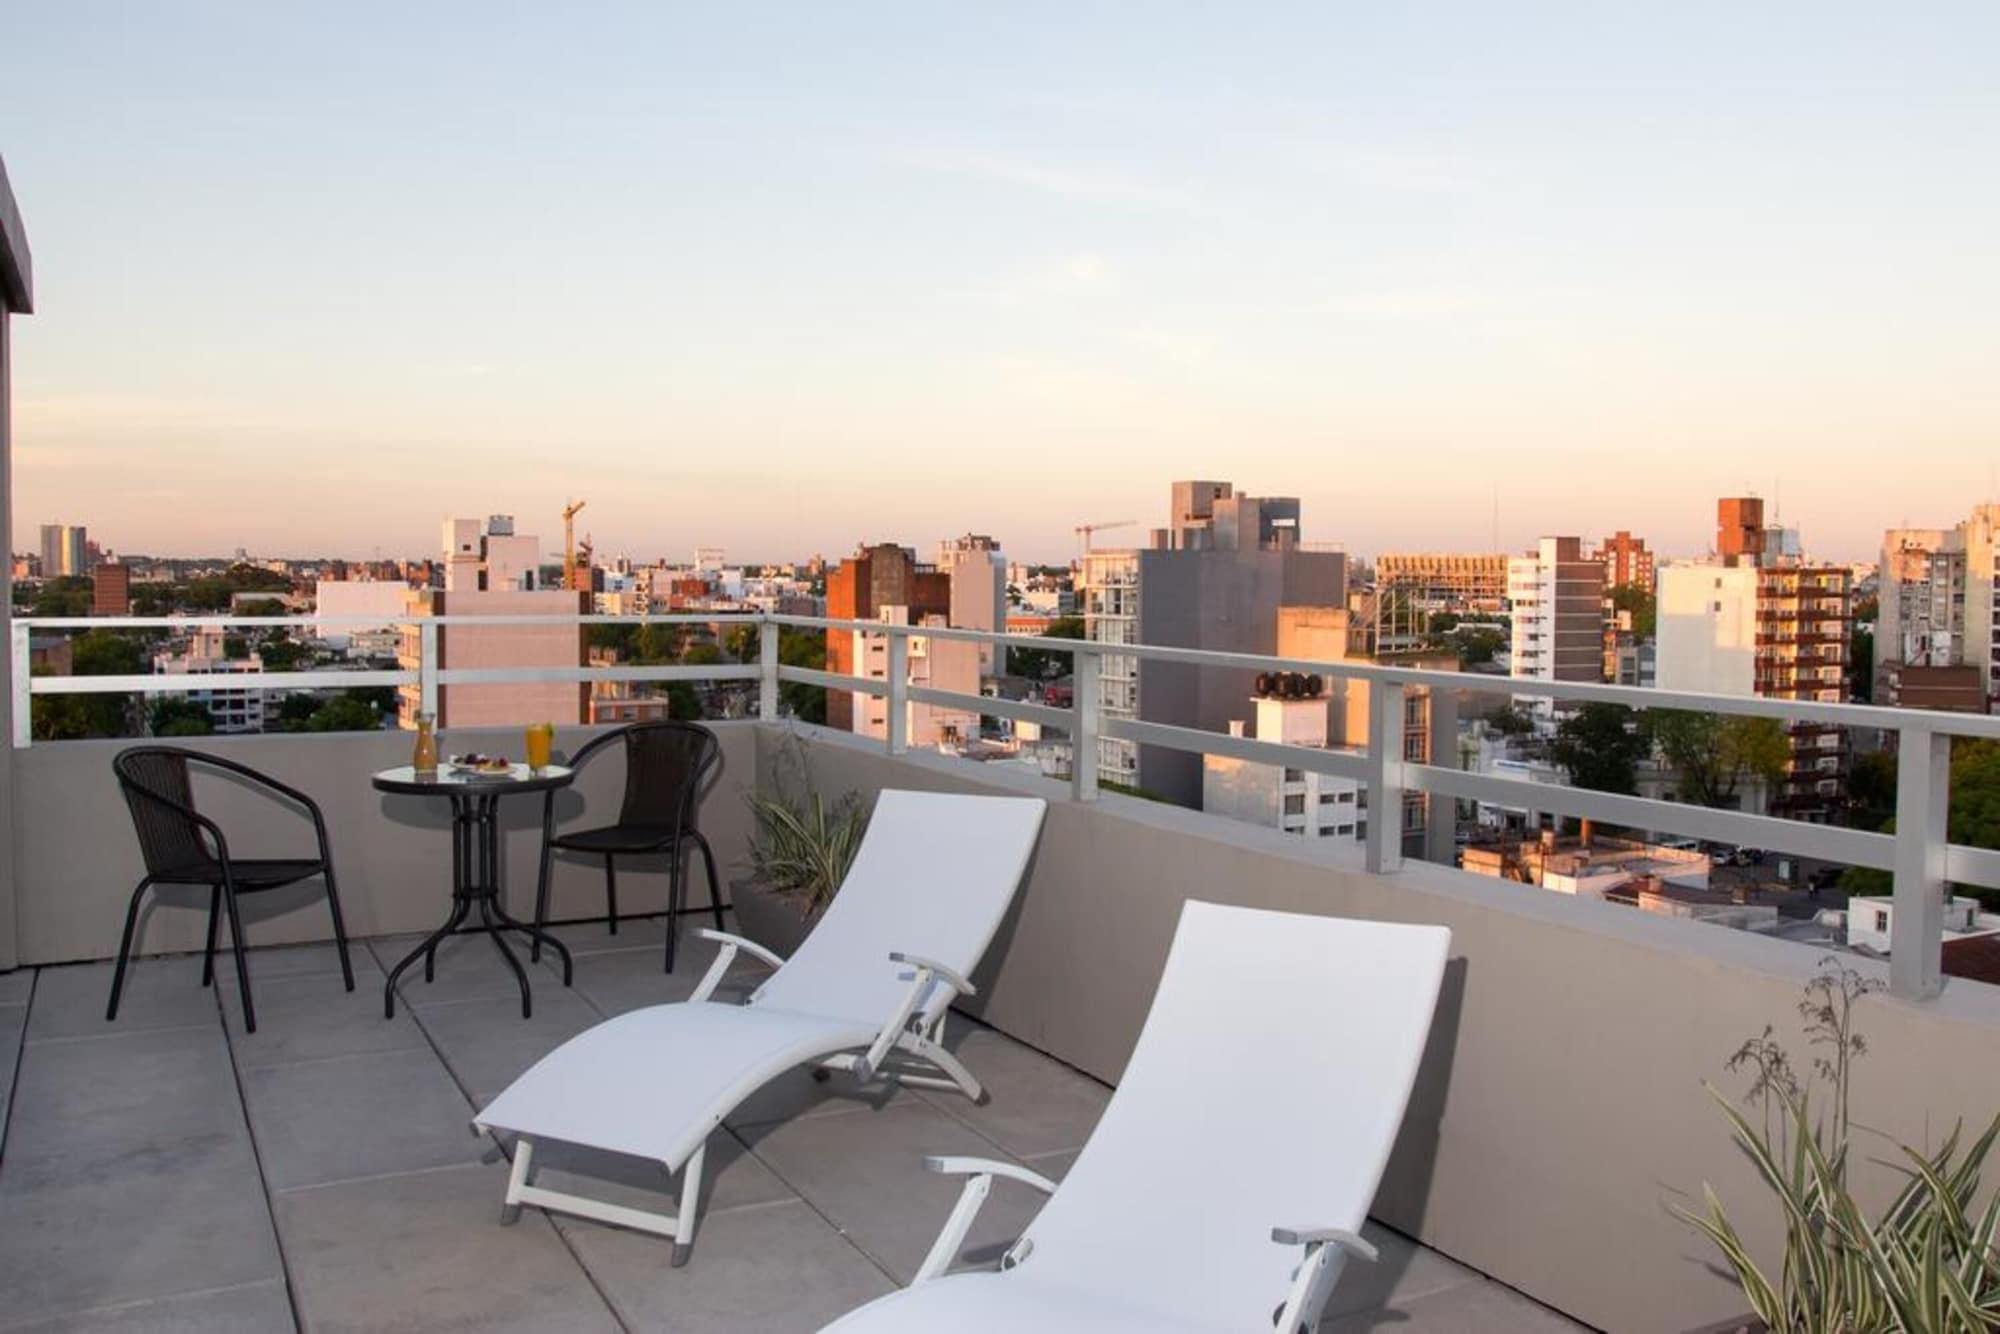 Hotel Ciudadano Suites Montevideo Exterior photo